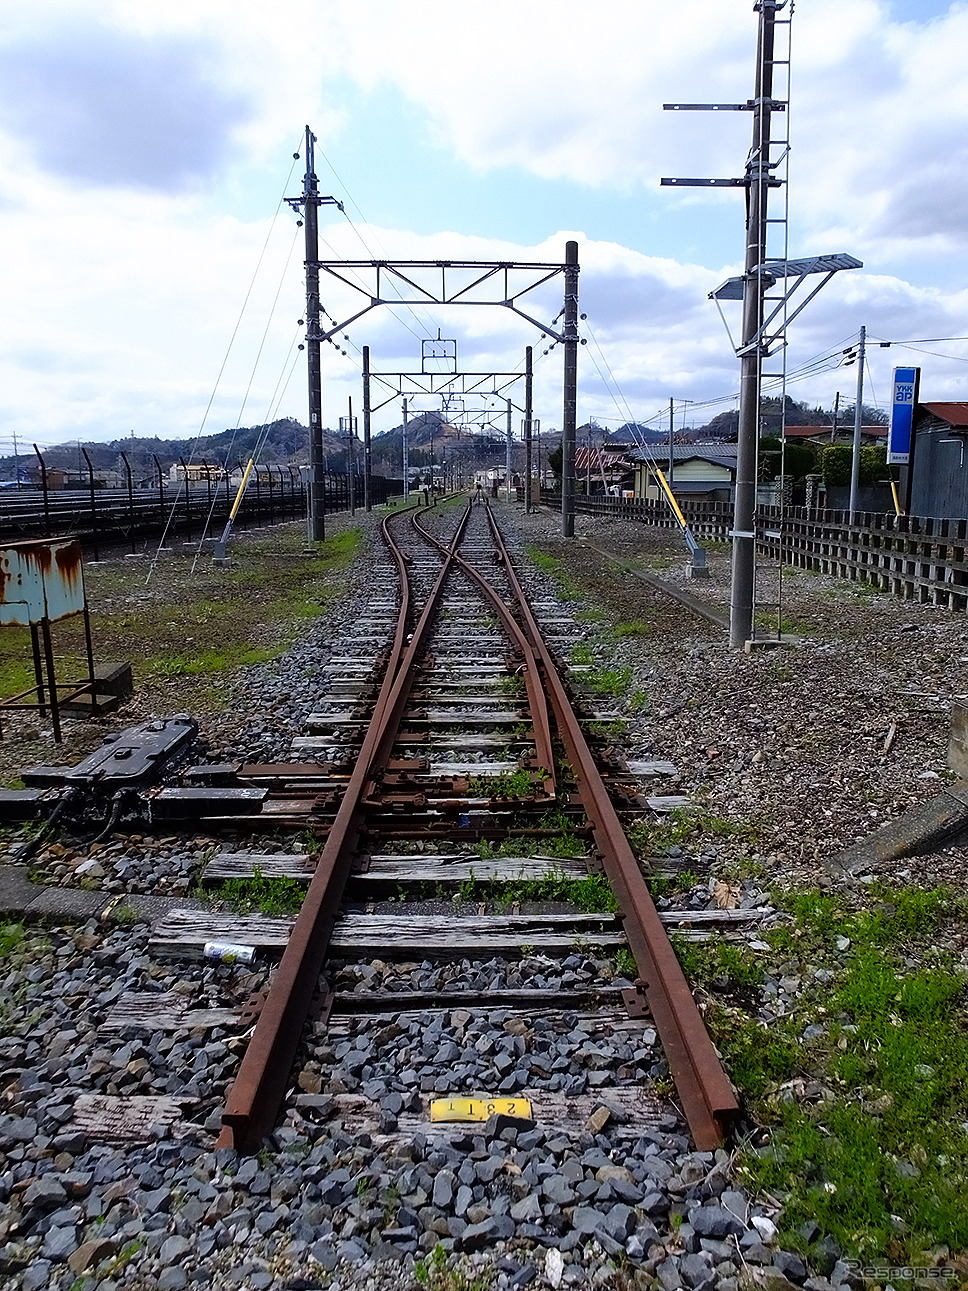 葛生駅の北には、軌道の痕跡がいまもあり、石灰石などを運ぶ列車が行き来した会沢線、大叶線、日鉄鉱業専用線などの線路を想像できる。当時の貨物線のレール脇にある工場には、役目を終えた貨車の姿もある